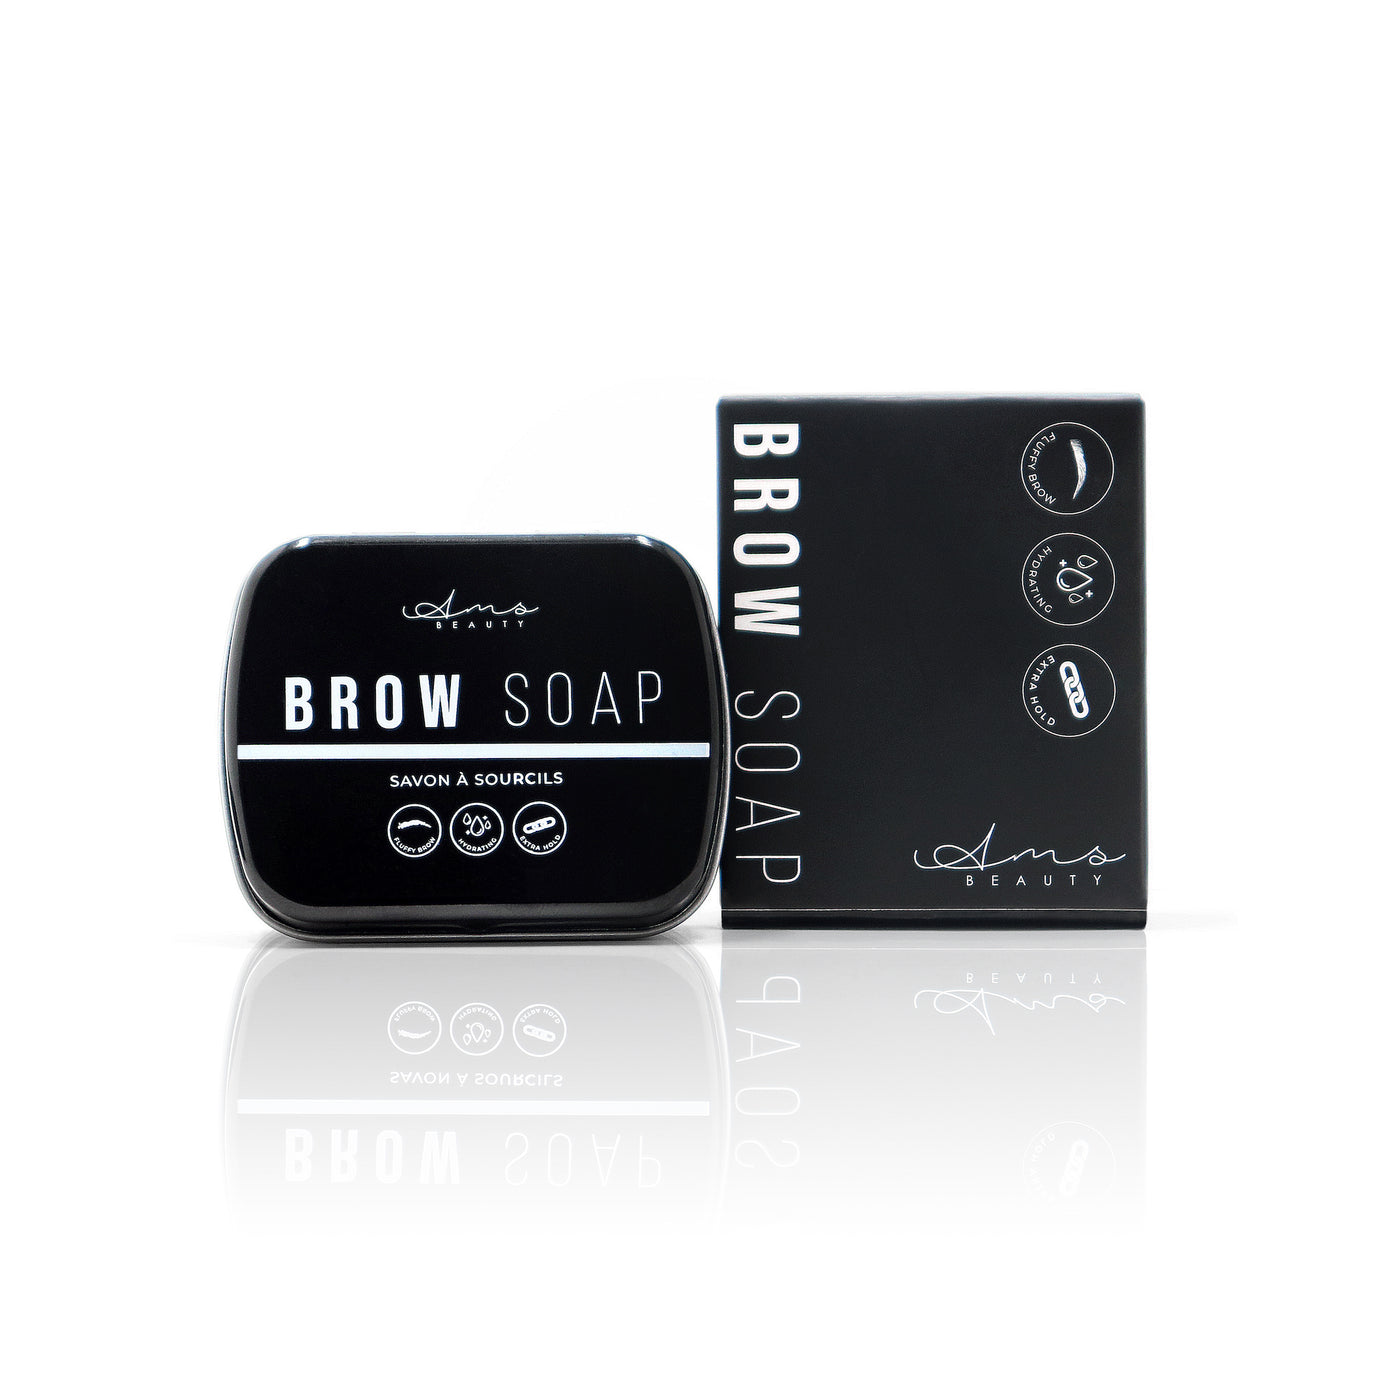 BROW SOAP - Savon à sourcils-AMSBEAUTY